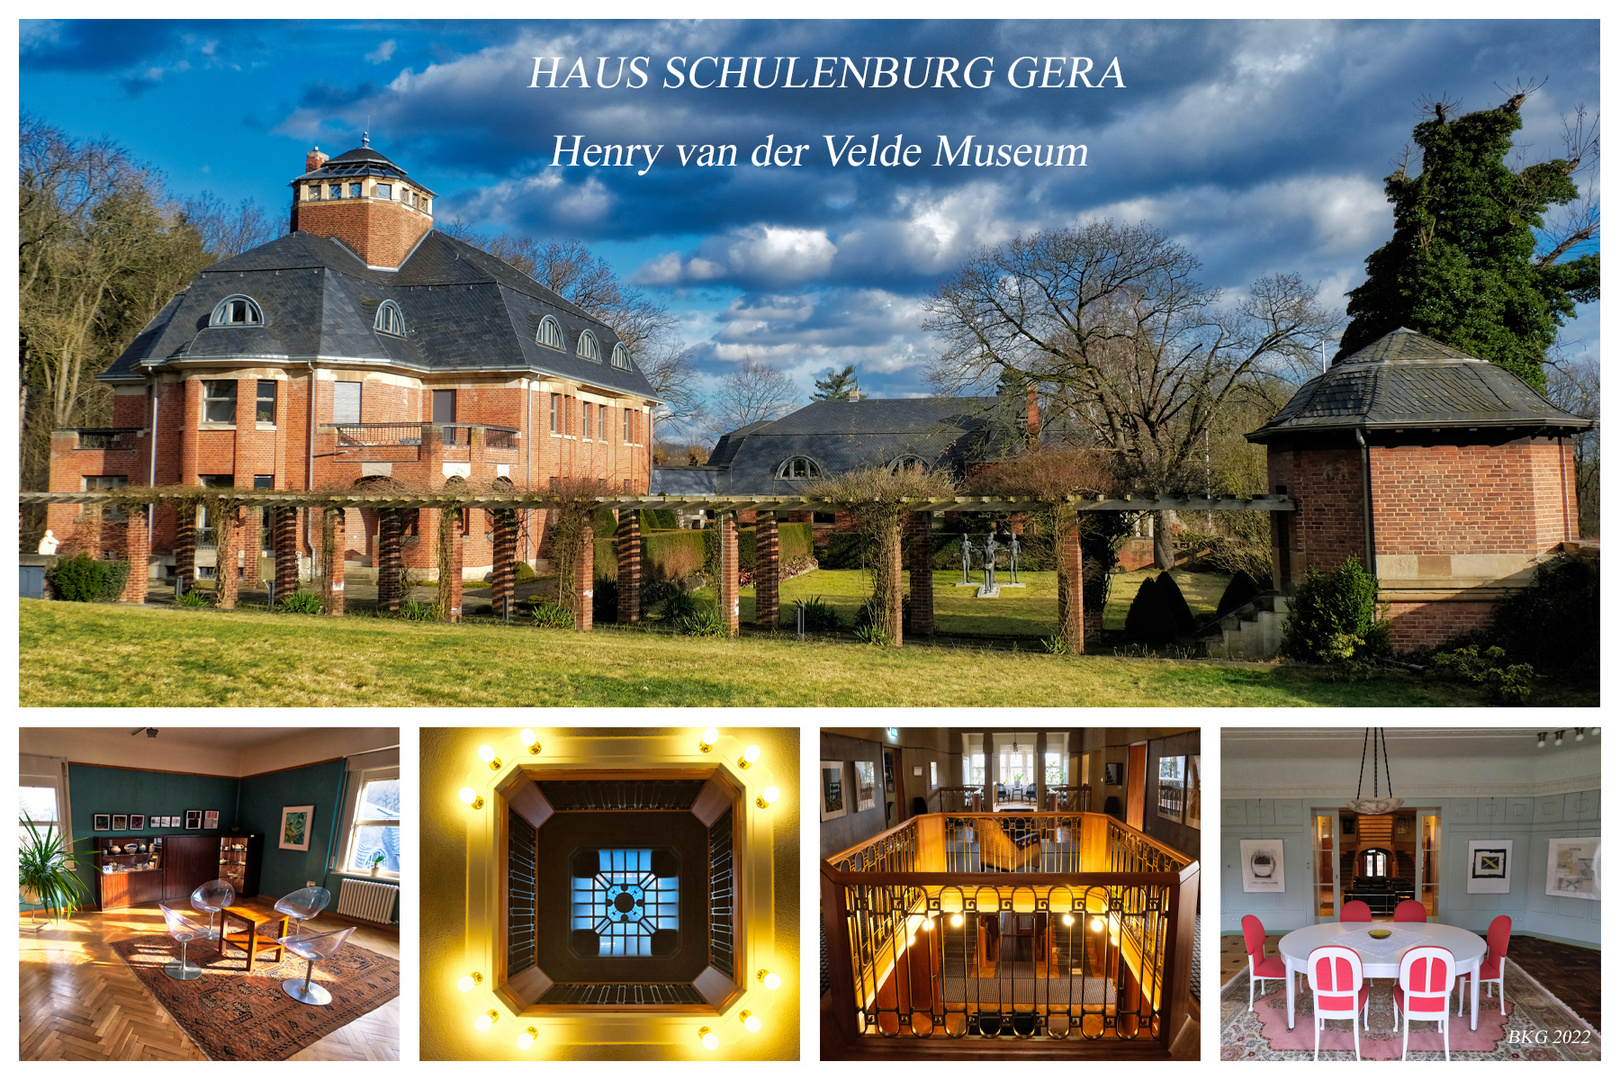 Haus Schulenburg mit van de Velde Museum Gera 